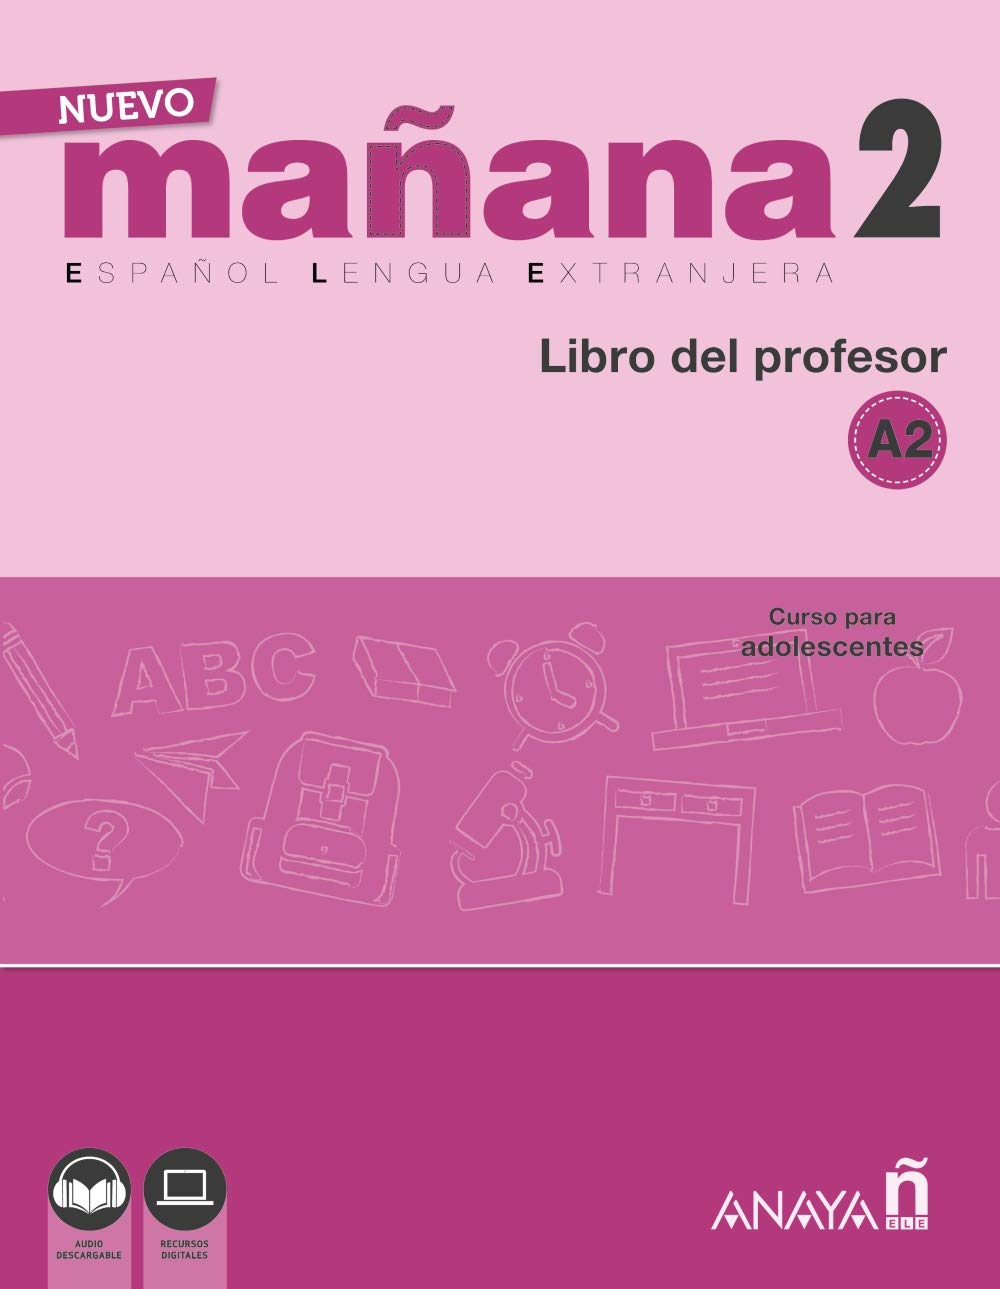 NUEVO MANANA 2 Libro del profesor + audio download